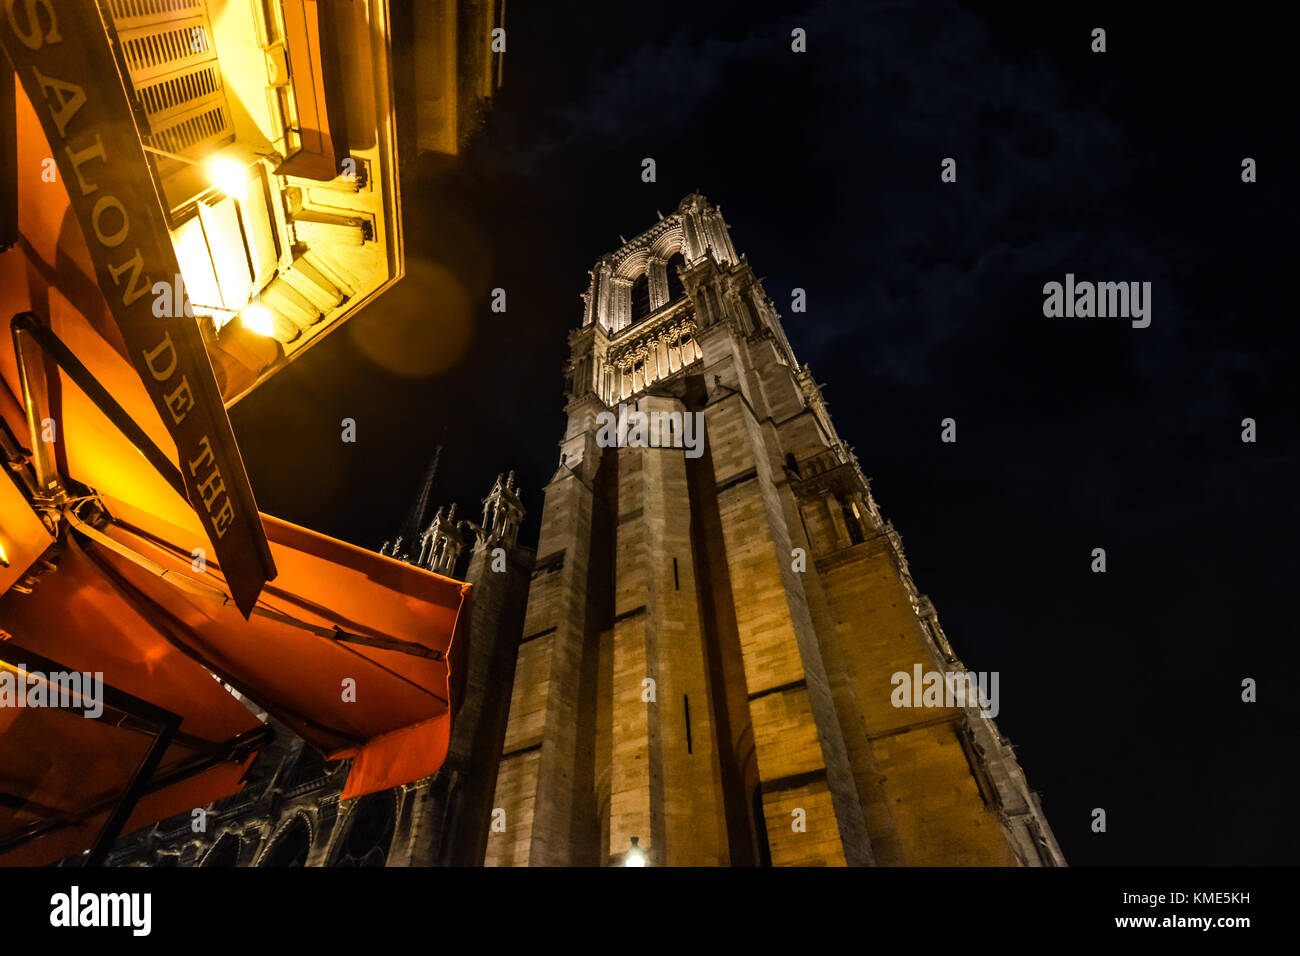 Blick auf den Glockenturm der Kathedrale Notre Dame auf der Île de la Cité in Paris Frankreich während des Essens bis spät in die Nacht in einem Straßencafé Stockfoto